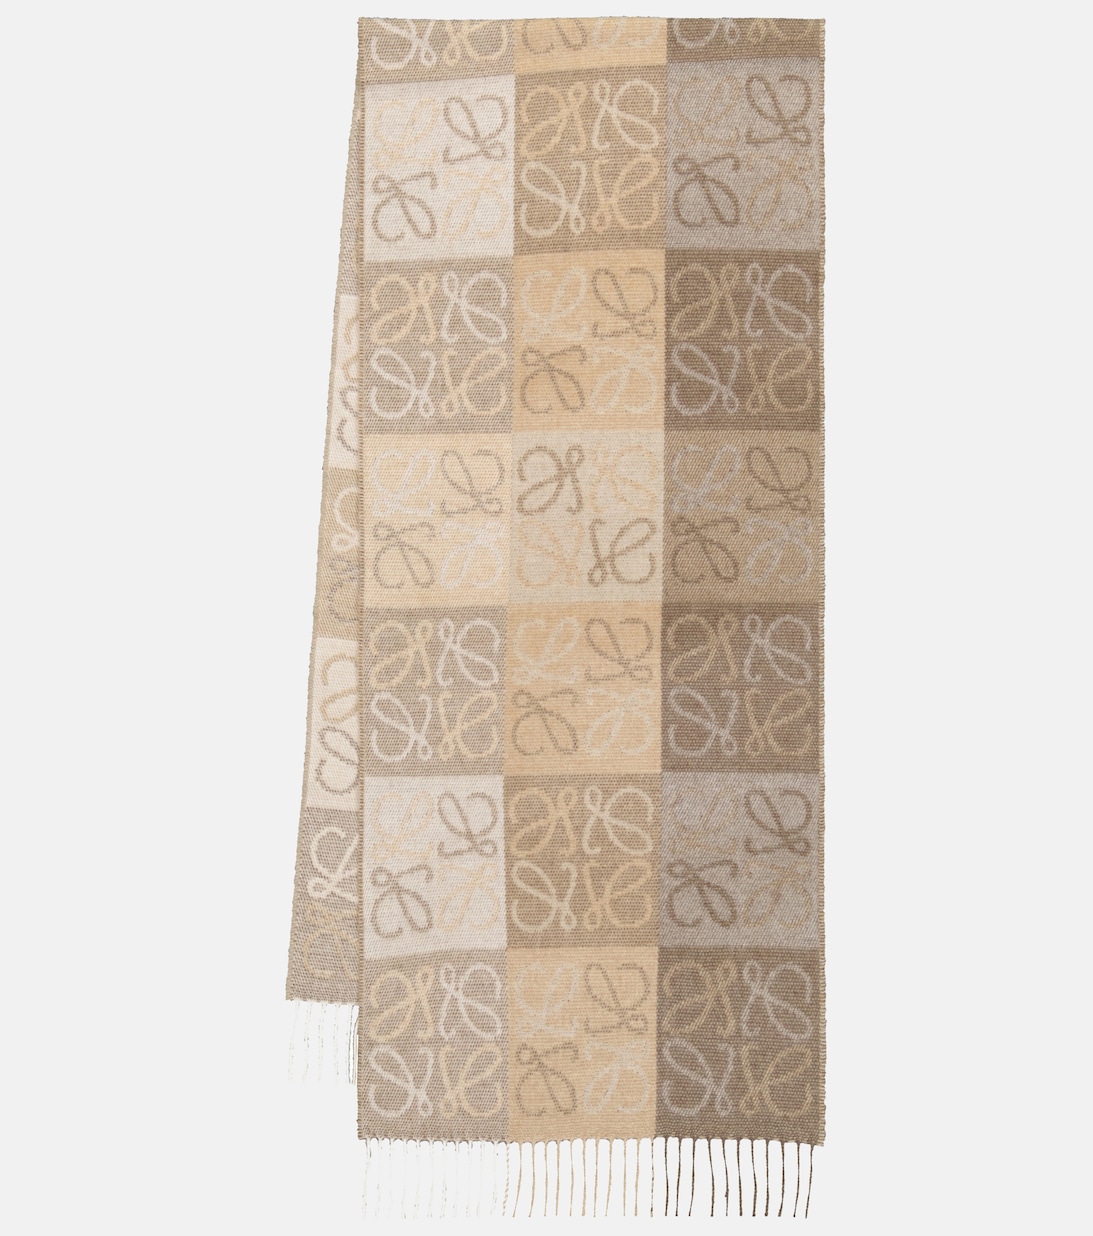 Шарф Anagram из шерсти и кашемира Loewe, бежевый шарф из кашемира и шерсти гладкой вязки цвет – бежевый